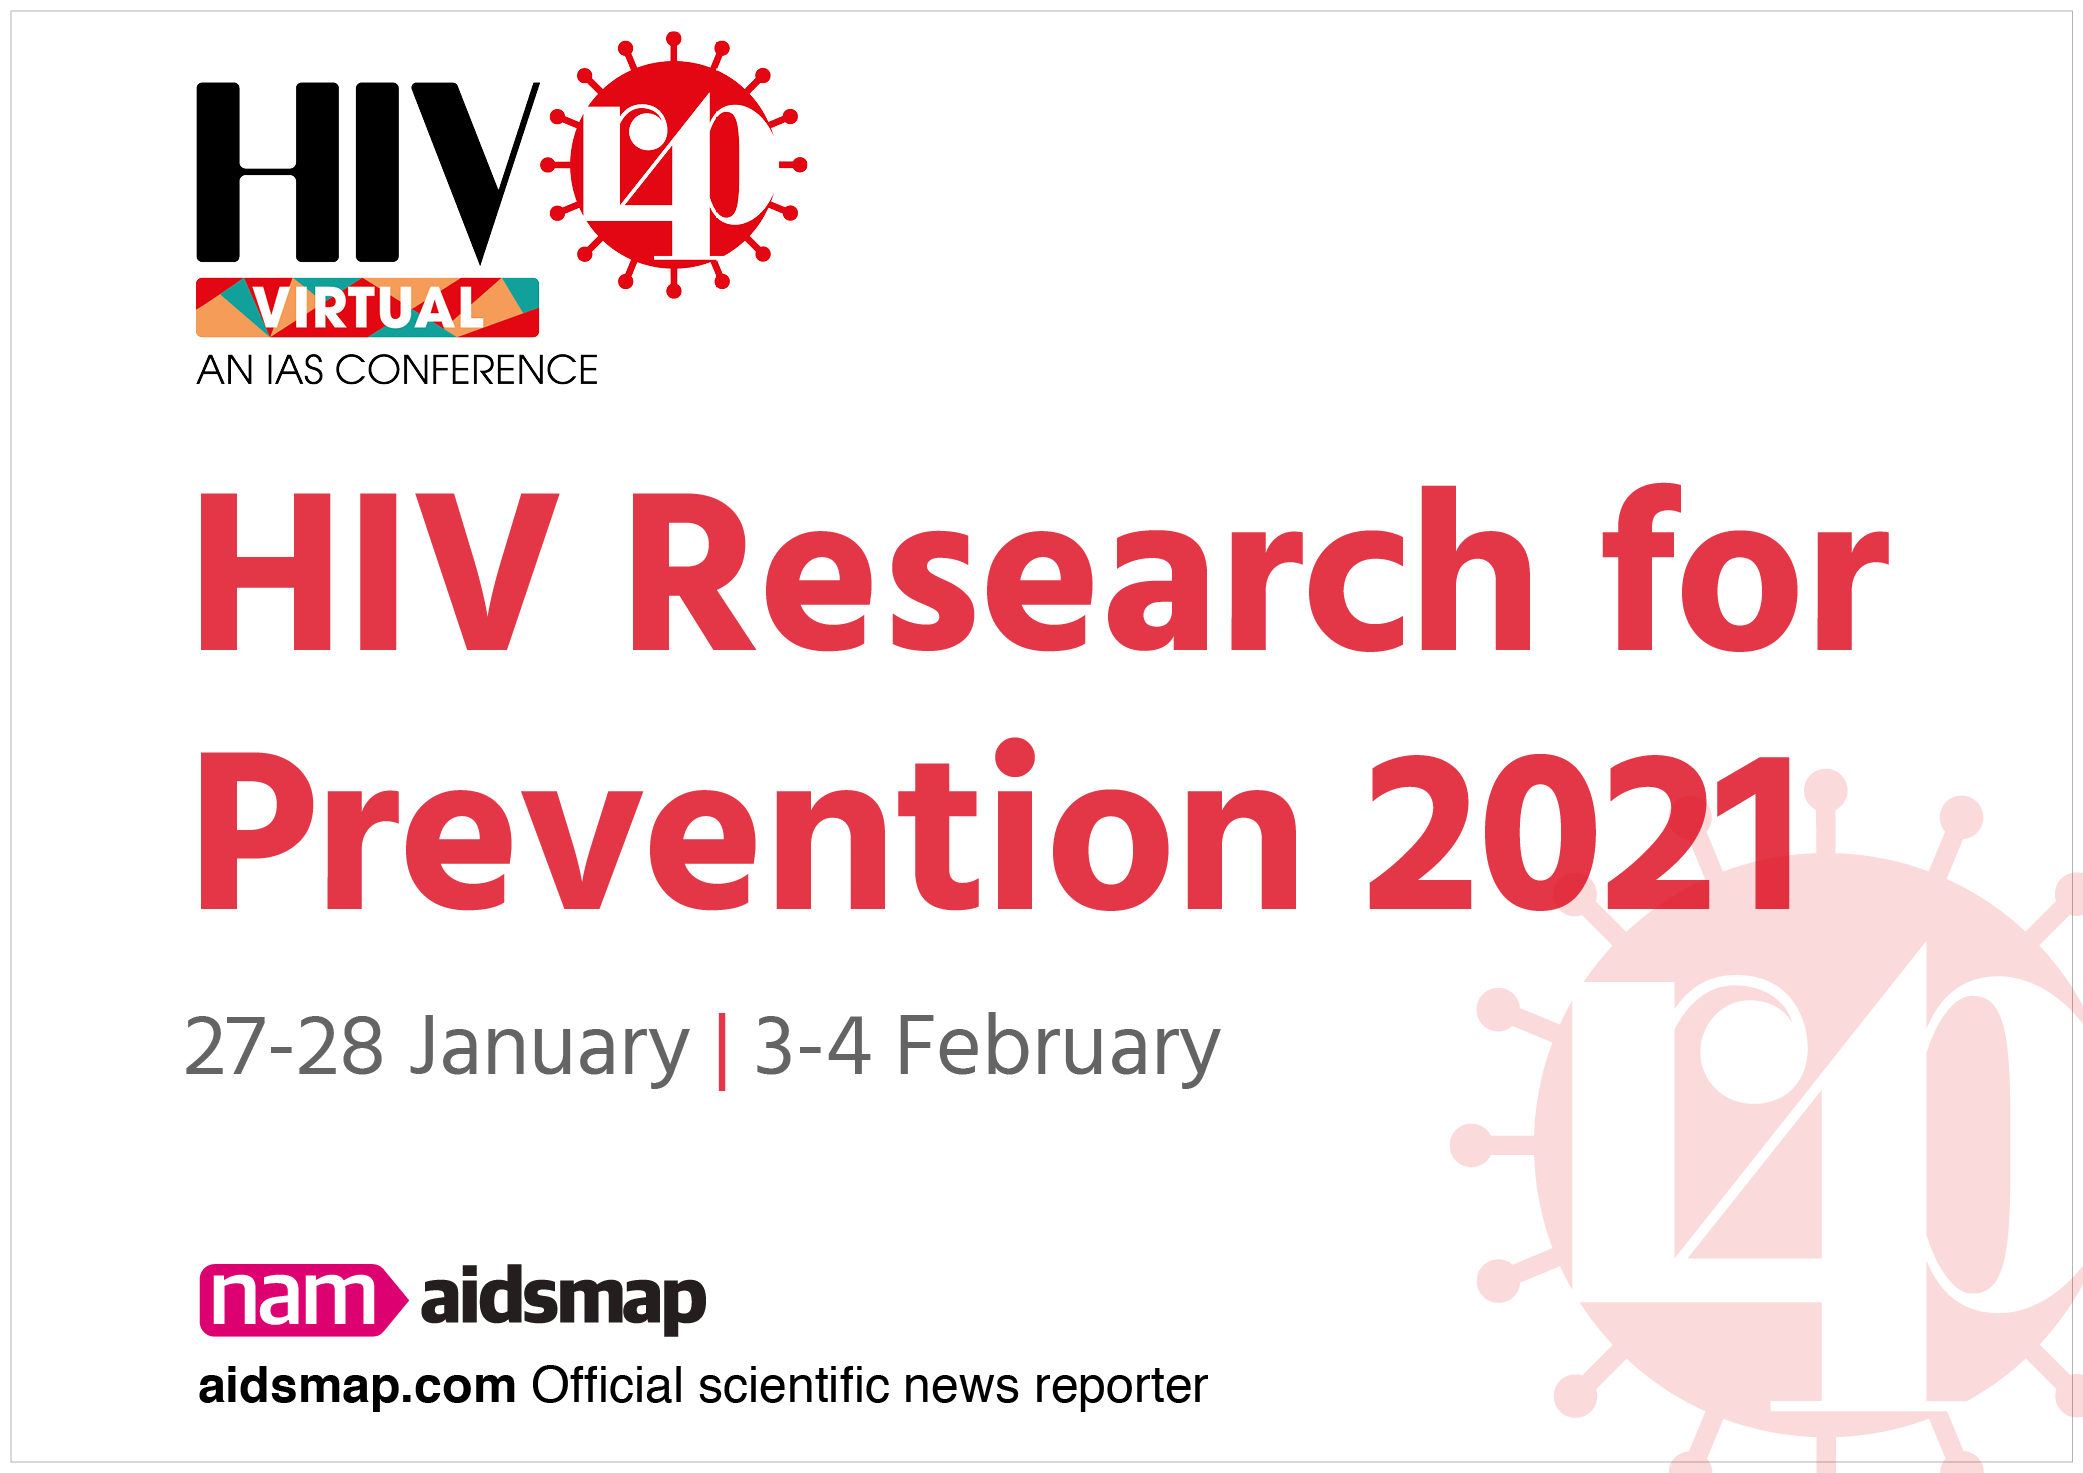 HIVR4P 2021 aidsmap